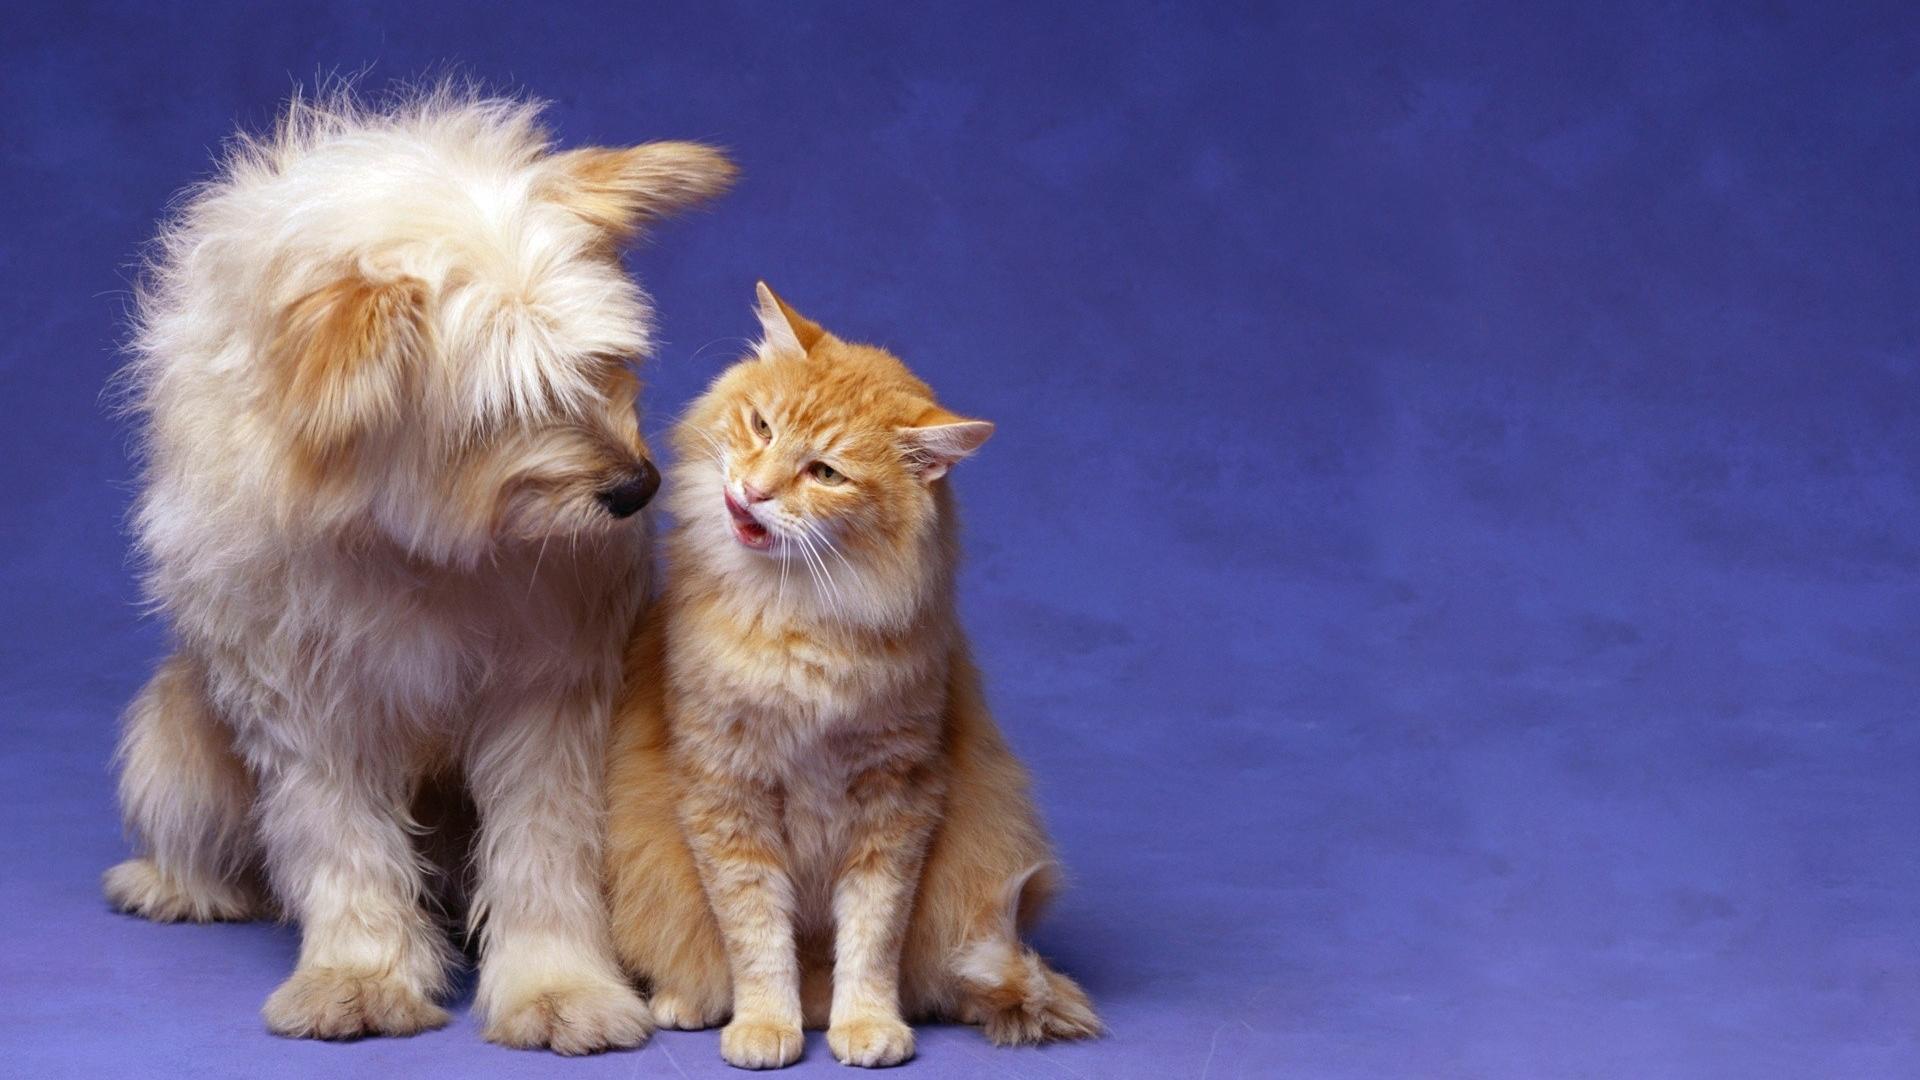 Cute Dog and Cat Wallpaper PixelsTalk Dog And Cat Friendship HD desktop wallpaper, High Definition 1920x1080